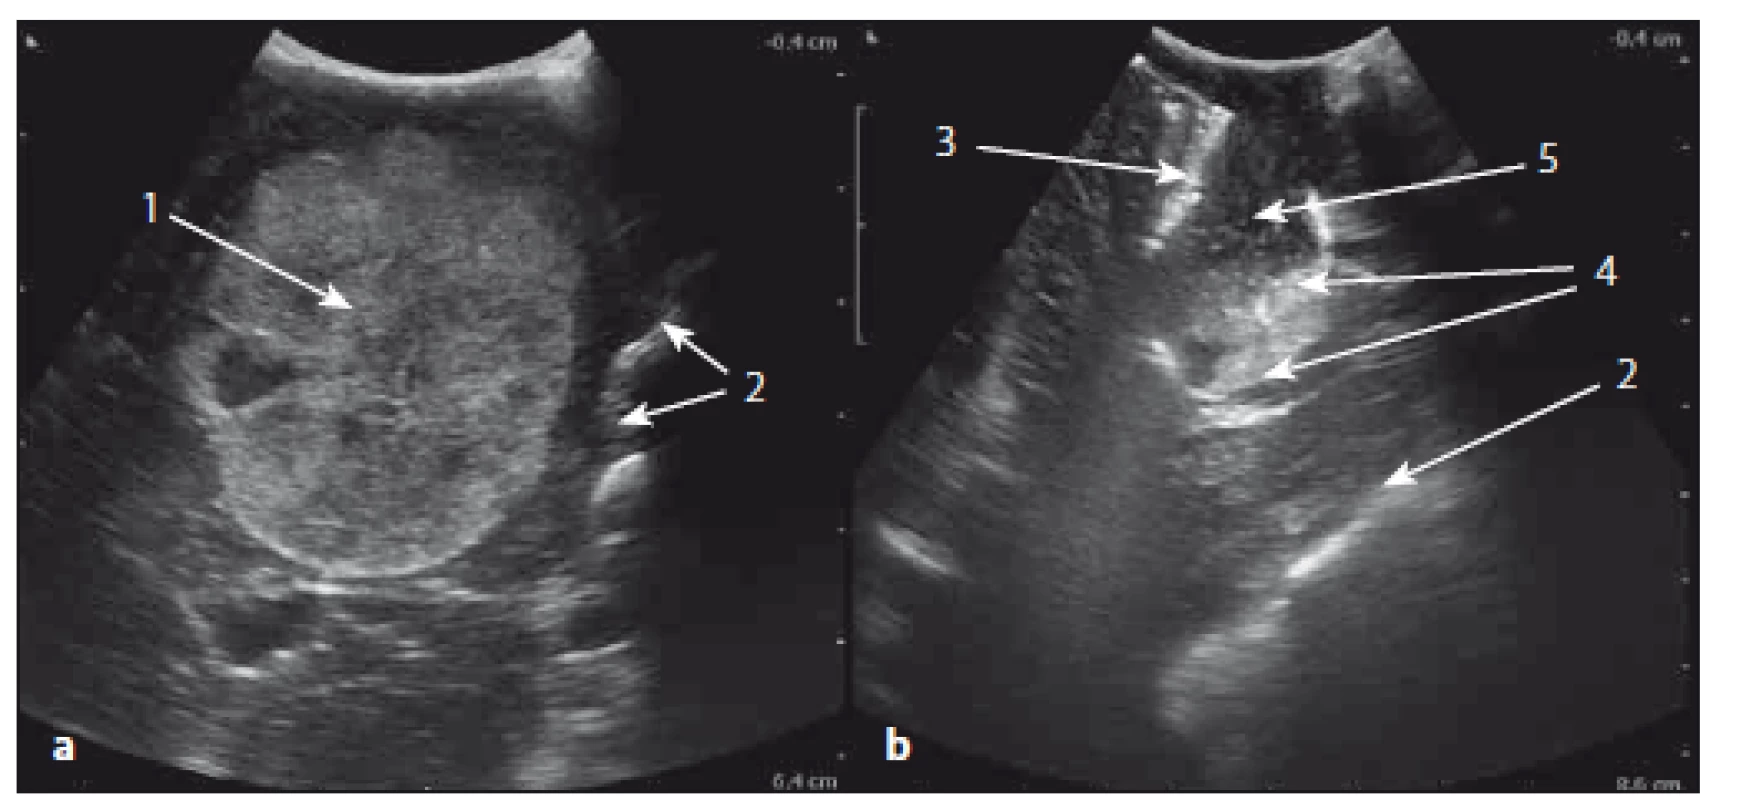 Sonografický obraz metastázy mozečku před a po resekci.
Fig. 4. The ultrasound image of cerebellar metastasis before and after resection.